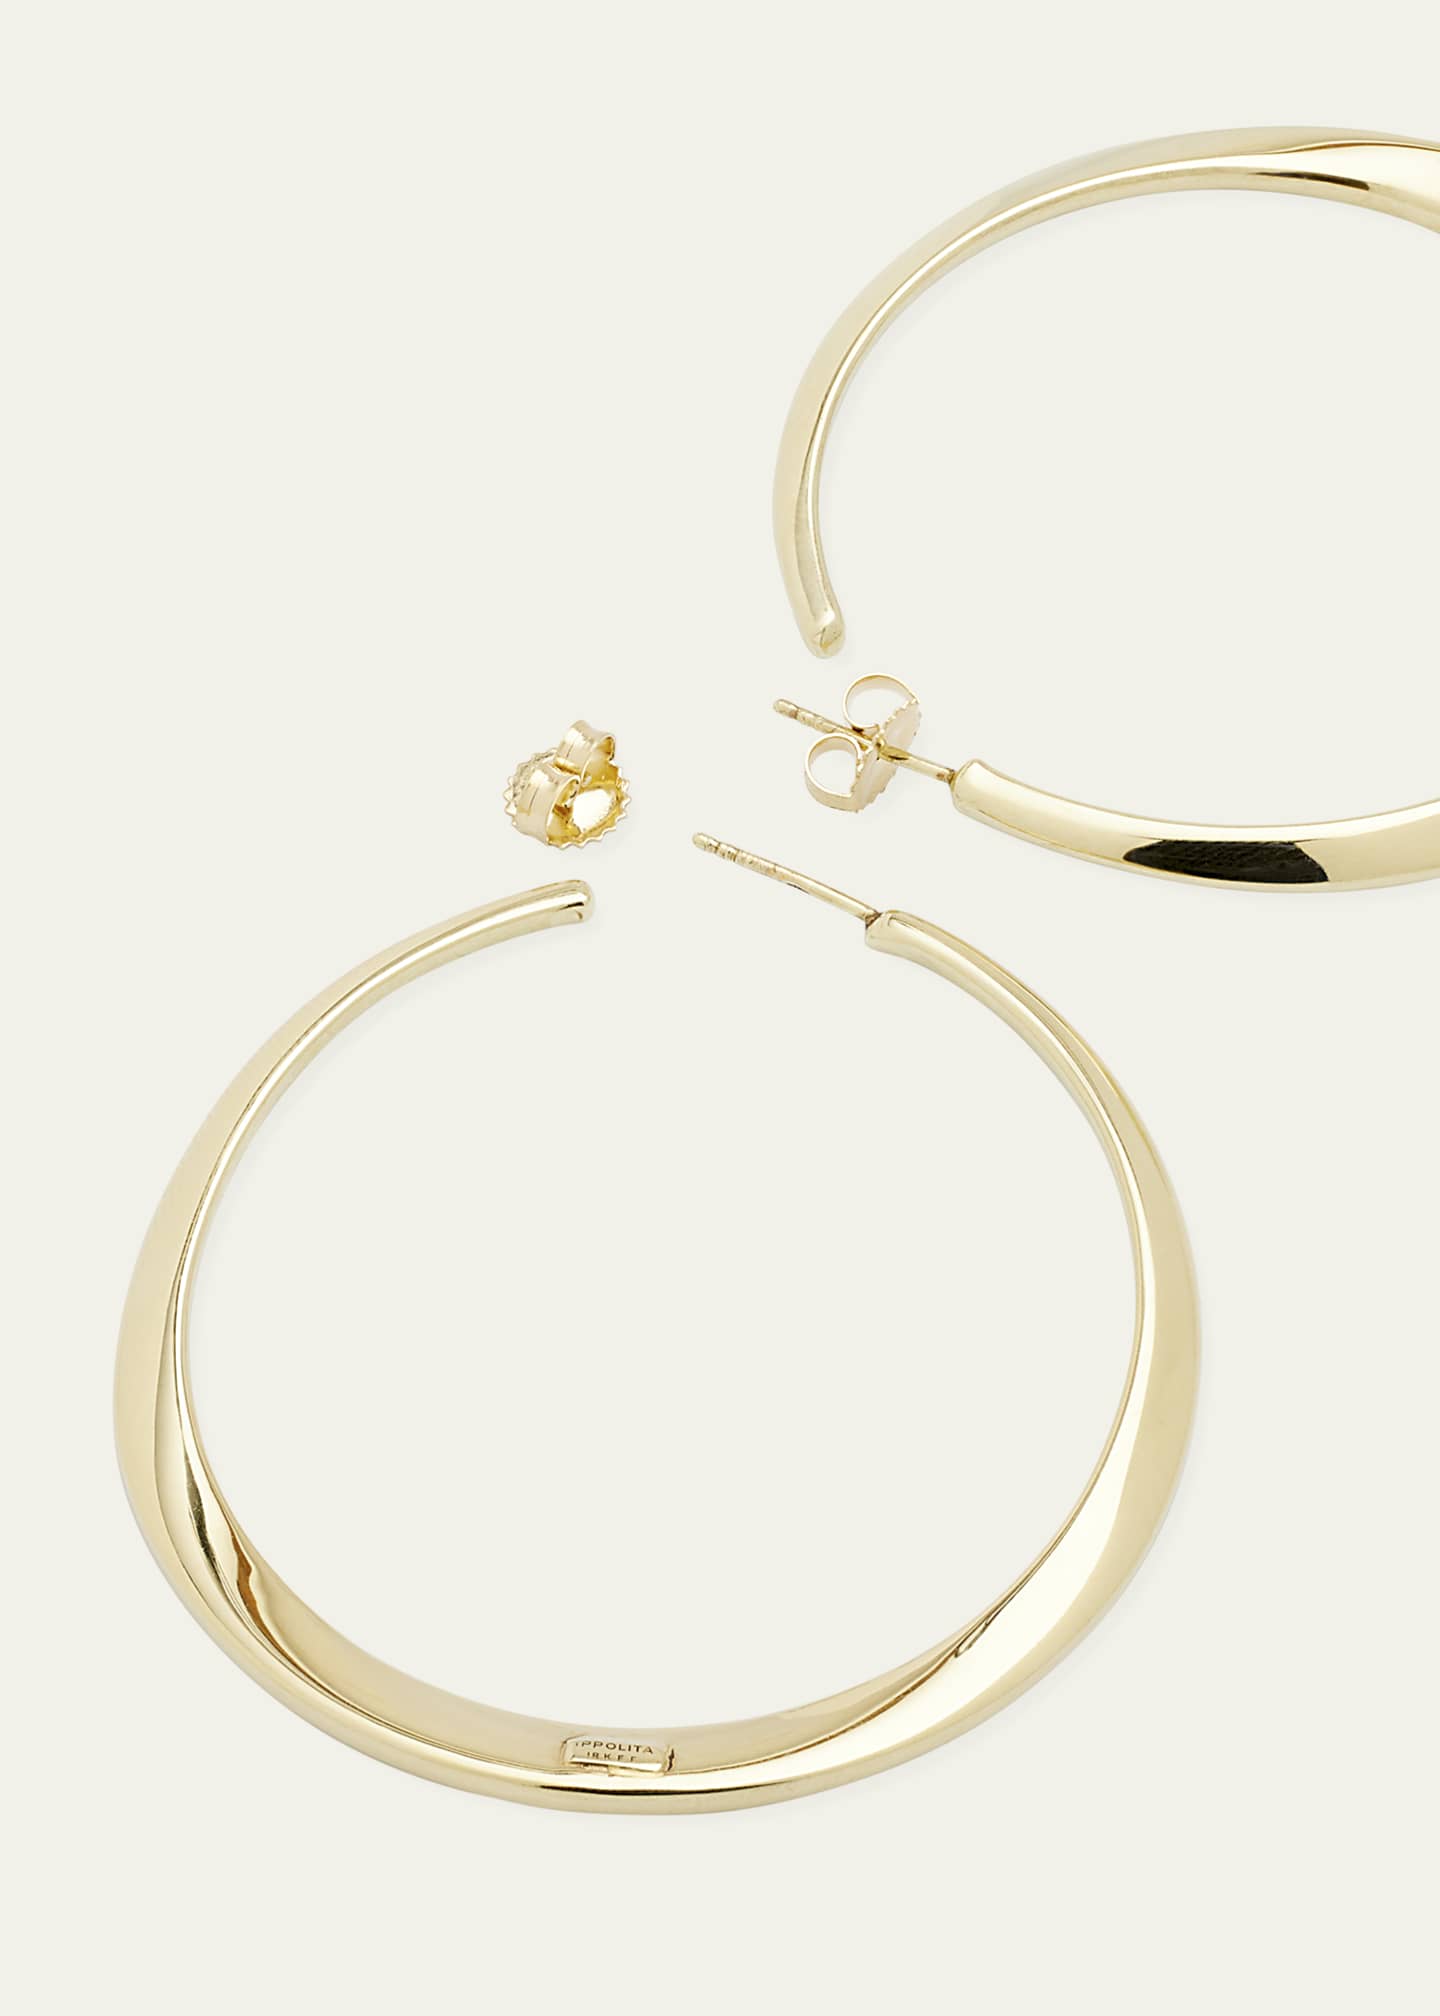 Ippolita Large Twisted Hoop Earrings in 18K Gold - Bergdorf Goodman